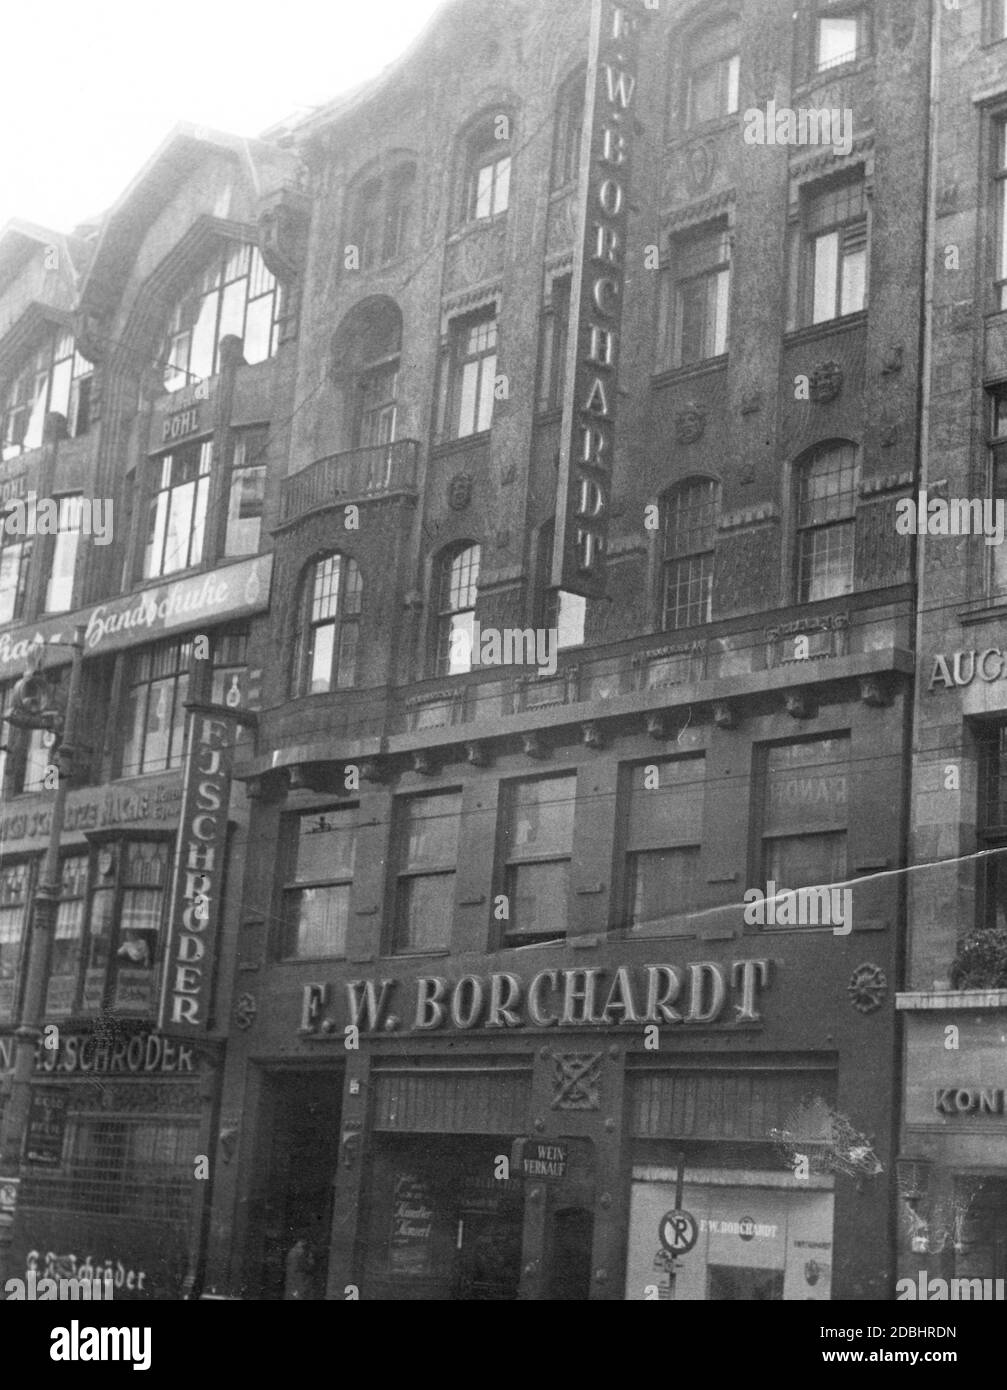 'Das Foto zeigt das F. W. Borchardt-Haus in der Leipziger Straße 25 in Berlin-Mitte. Dieses Gebäude wurde zuvor vom Weinhaus Kempinski genutzt, dessen jüdische Besitzer nach der Machtergreifung der Nationalsozialisten emigrierten. Das Gebäude wurde in den Besitz der ''Arier''. Links befindet sich das Geschäft des Juweliers F. J. Schroeder. Undatierte Aufnahme, aufgenommen um 1935.' Stockfoto